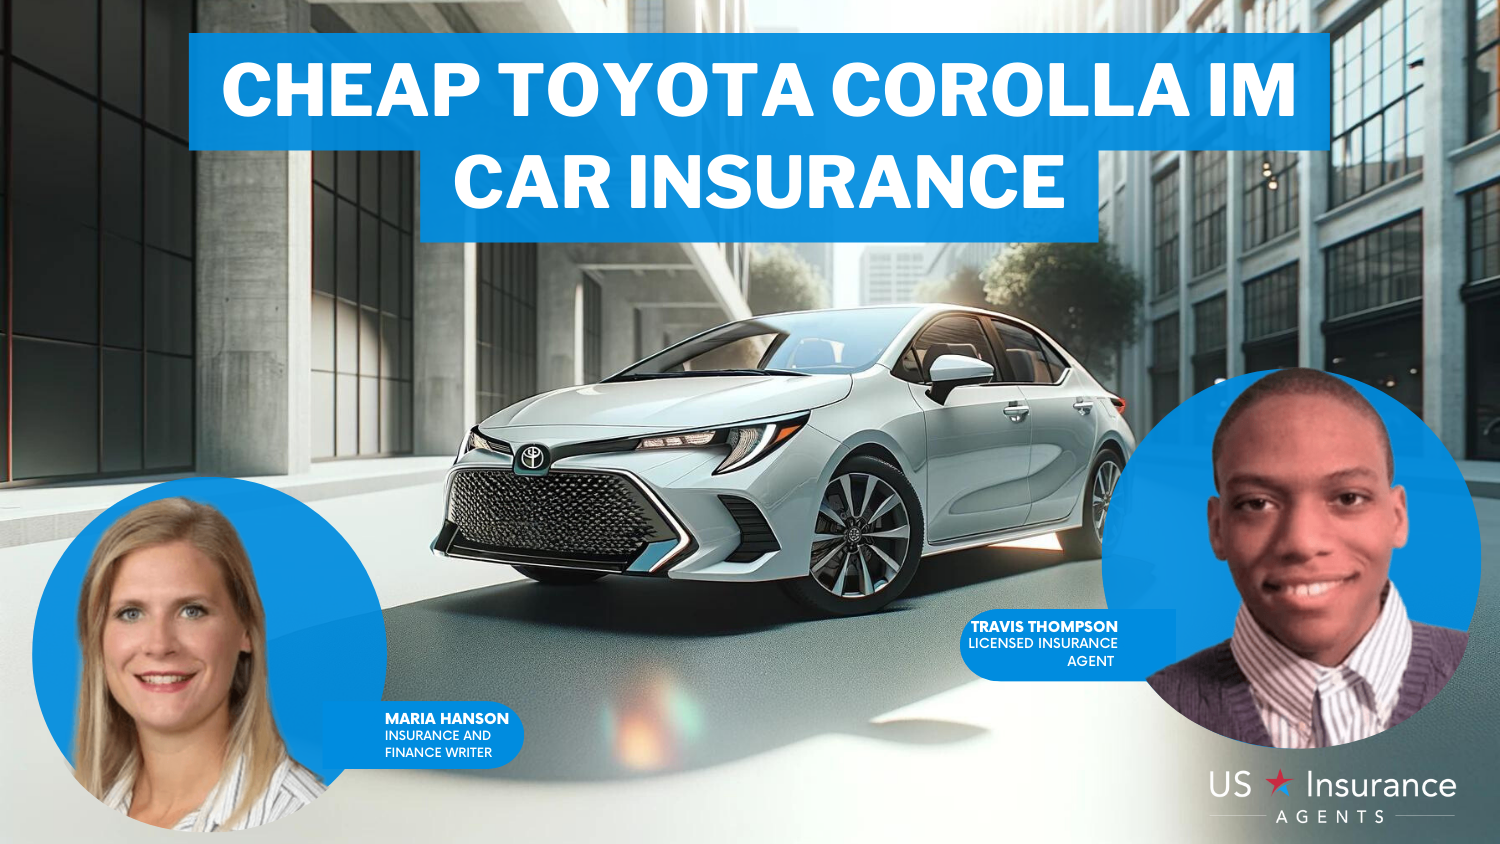 Cheap Toyota Corolla iM Car Insurance: State Farm, Progressive and Allstate